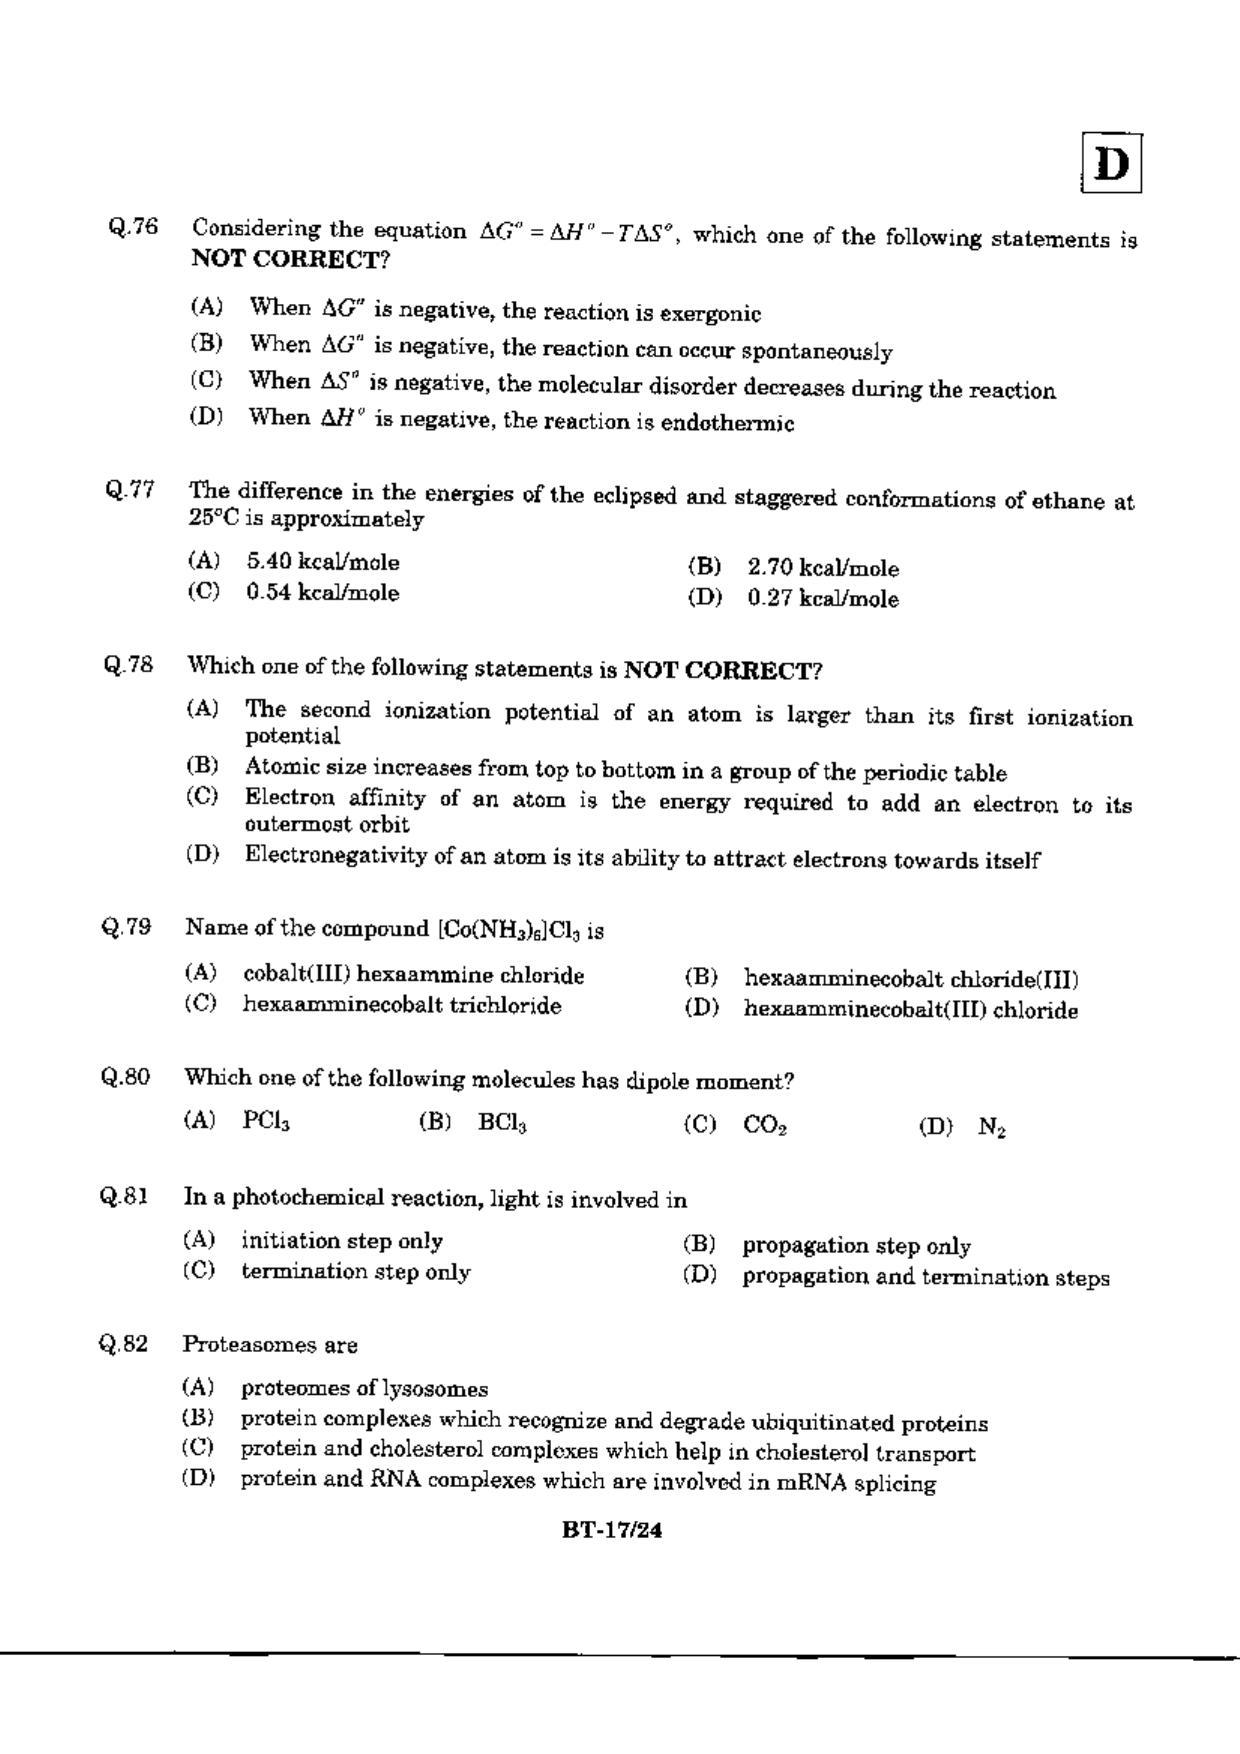 JAM 2010: BT Question Paper - Page 19